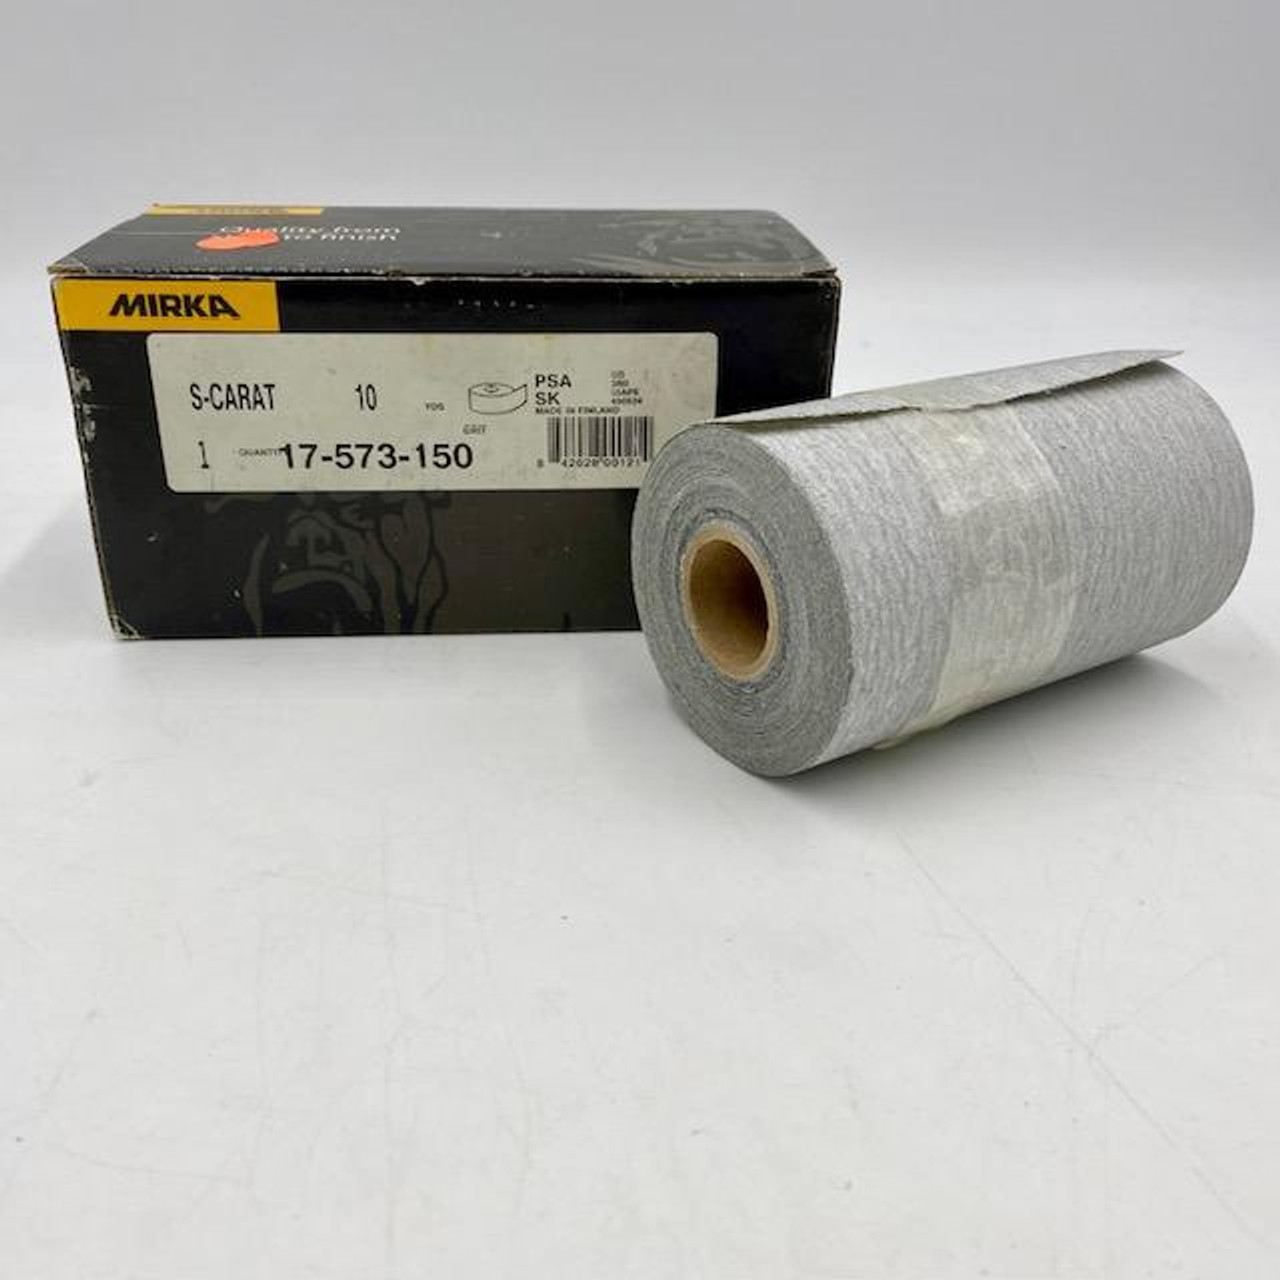 Mirka 17-573-150 S-Carat PSA SK 150 Grit Sheet Roll, 10 Yds